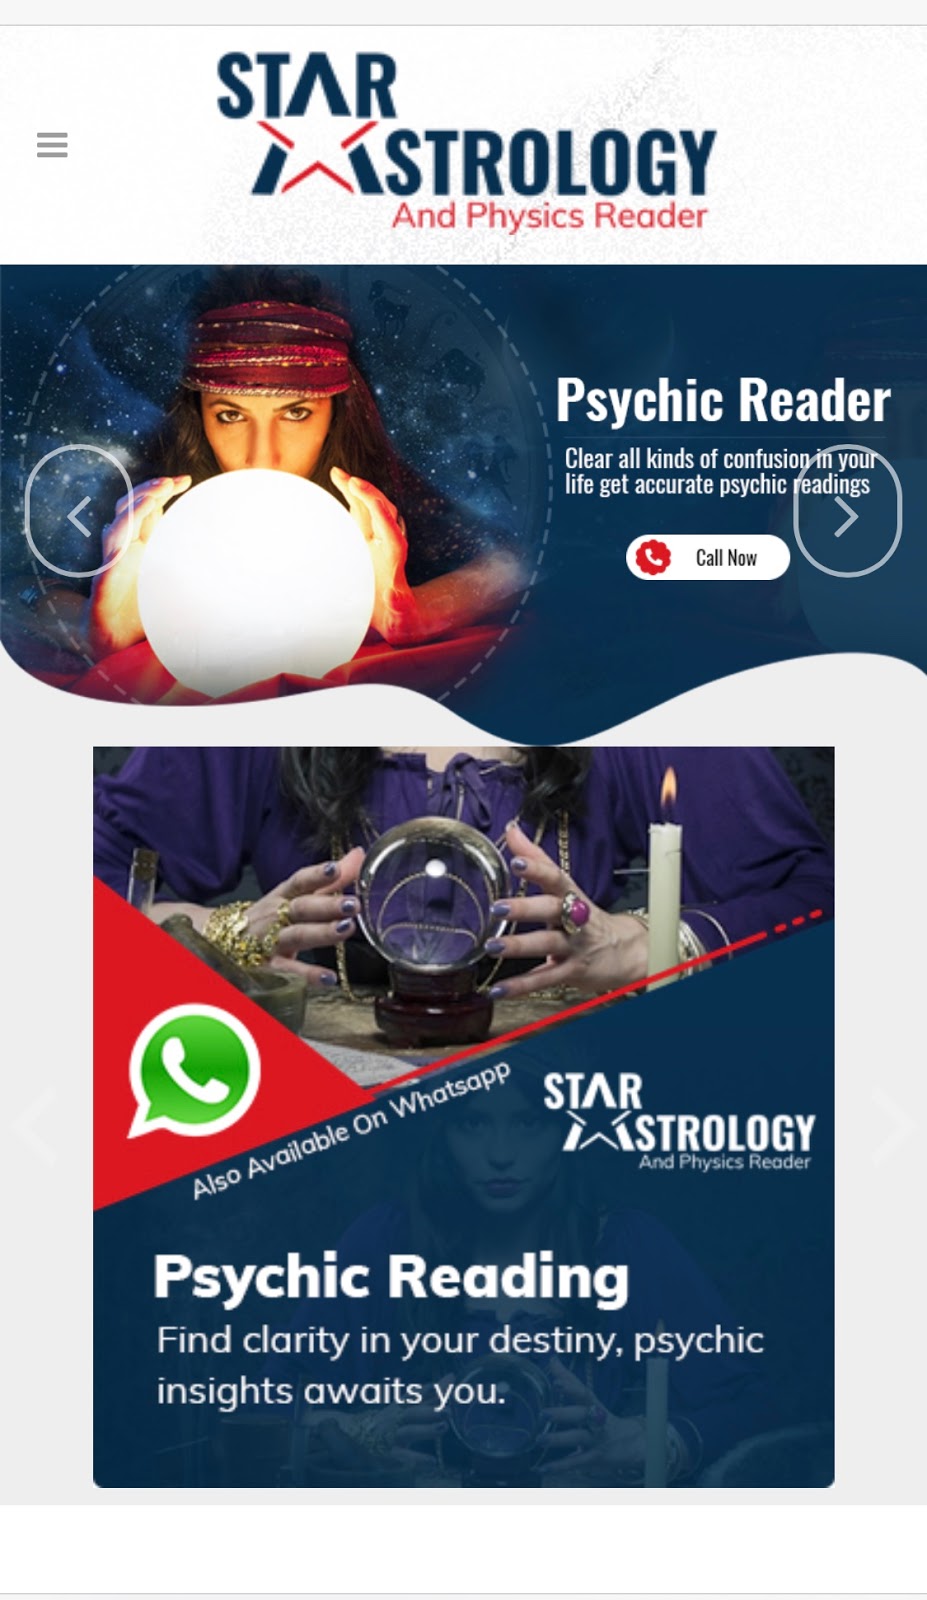 Pandith Raghav Roy - Indian Astrologer in Melbourne, Australia |  | 65 Devonshire Rd, Sunshine VIC 3020, Australia | 0420787232 OR +61 420 787 232